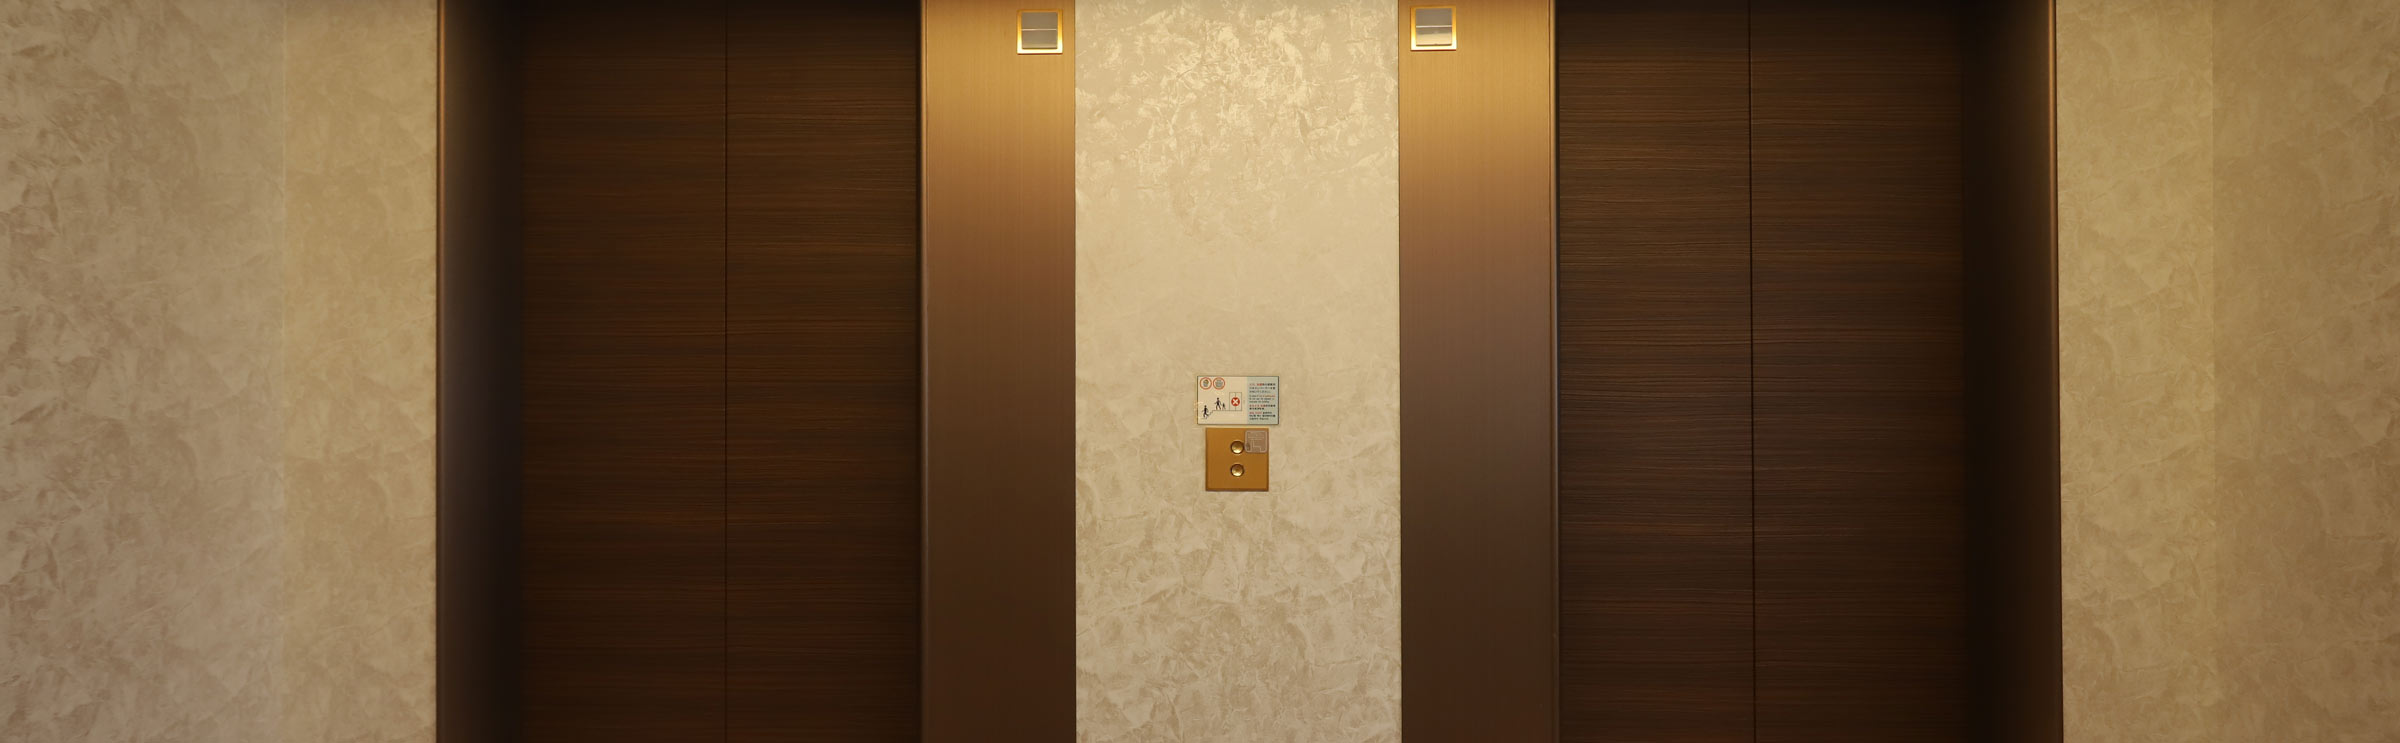 レギュラーフロア Regular floor｜ANAクラウンプラザホテル釧路